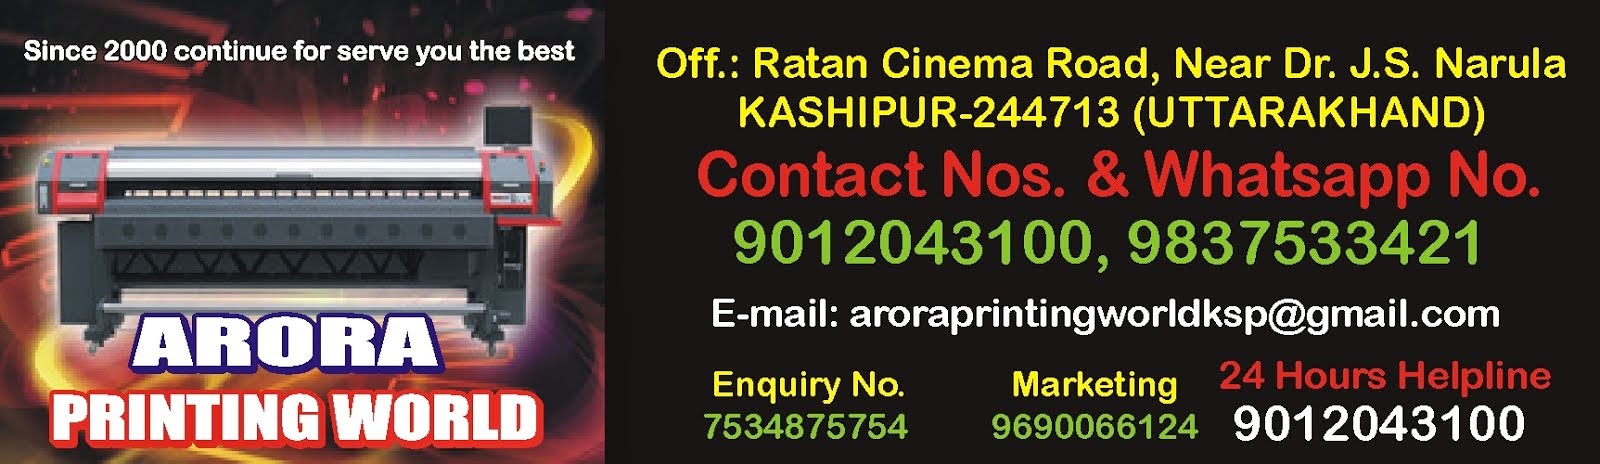 Arora Printing World Kashipur